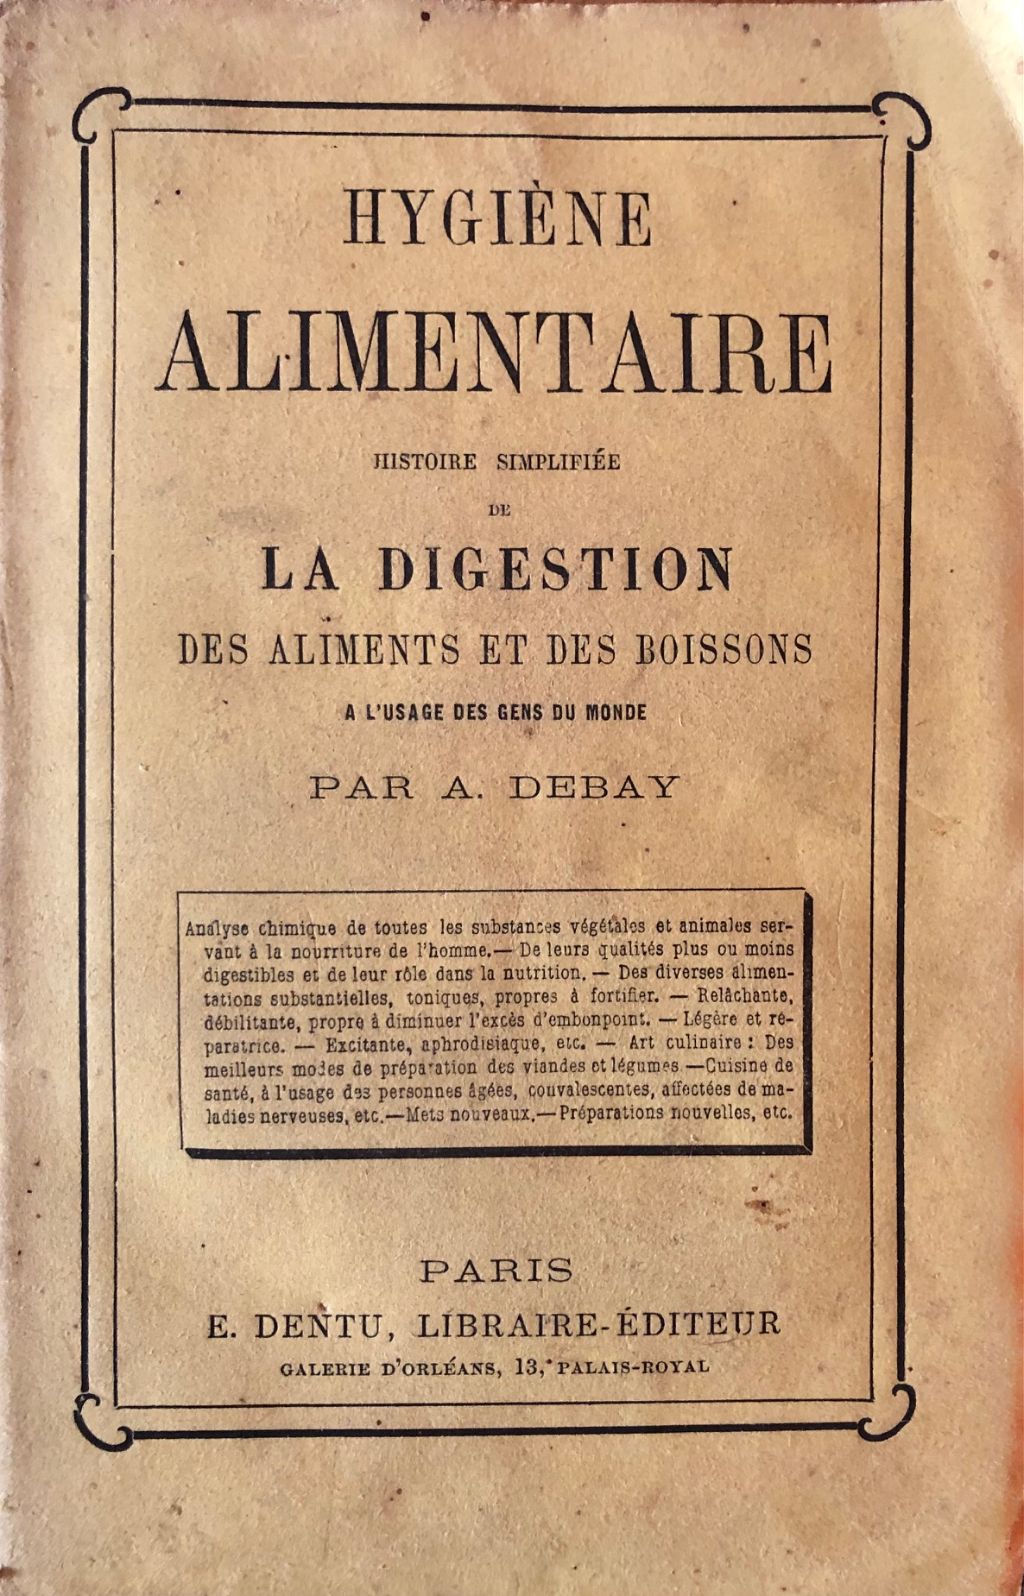 (Health) A. Debay. Hygiene Alimentaire: Histoire simplifiee de la Digestion, des Aliments et des Boissons.